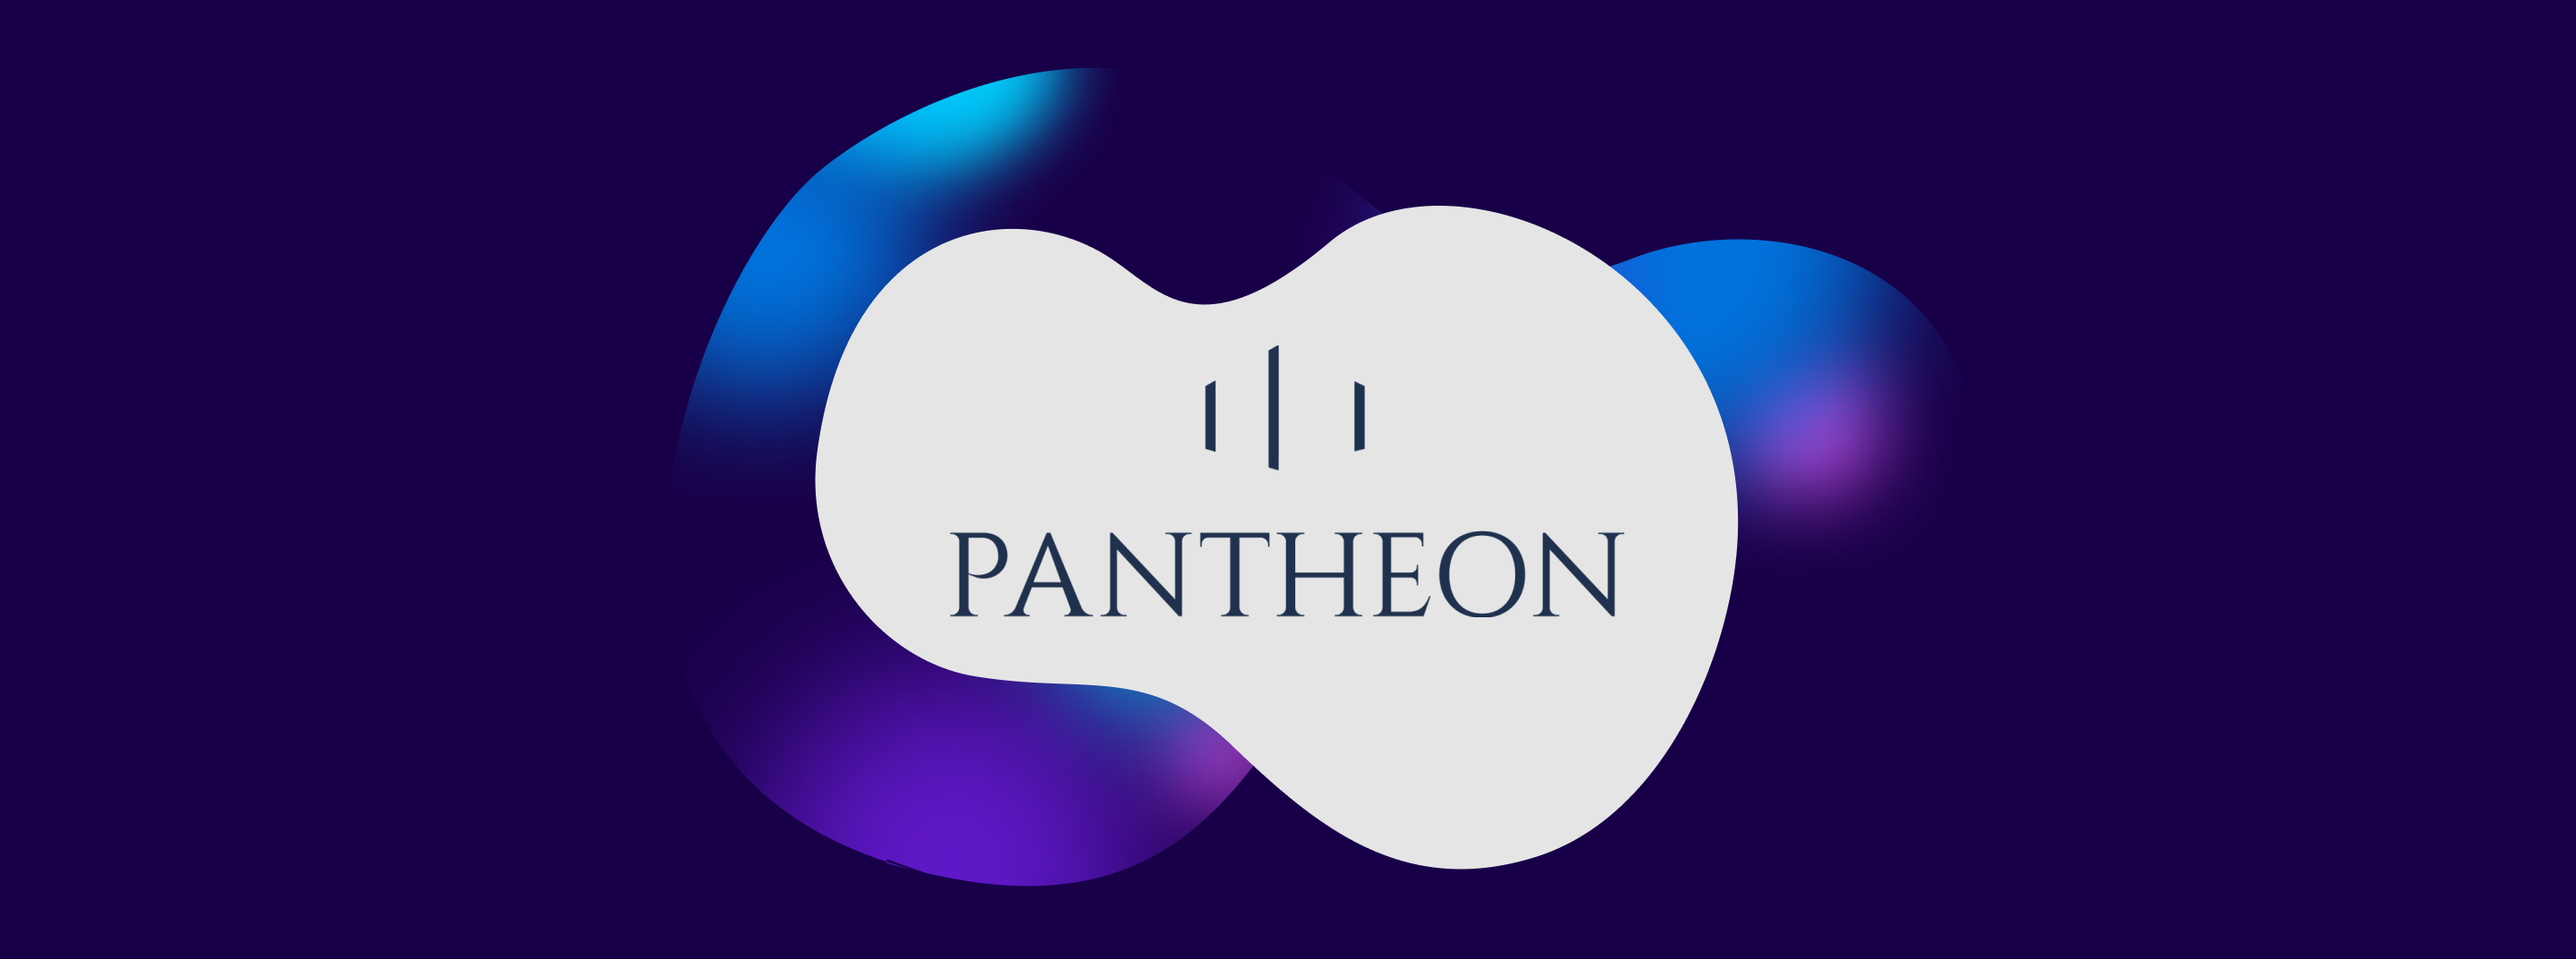 Pantheon logo